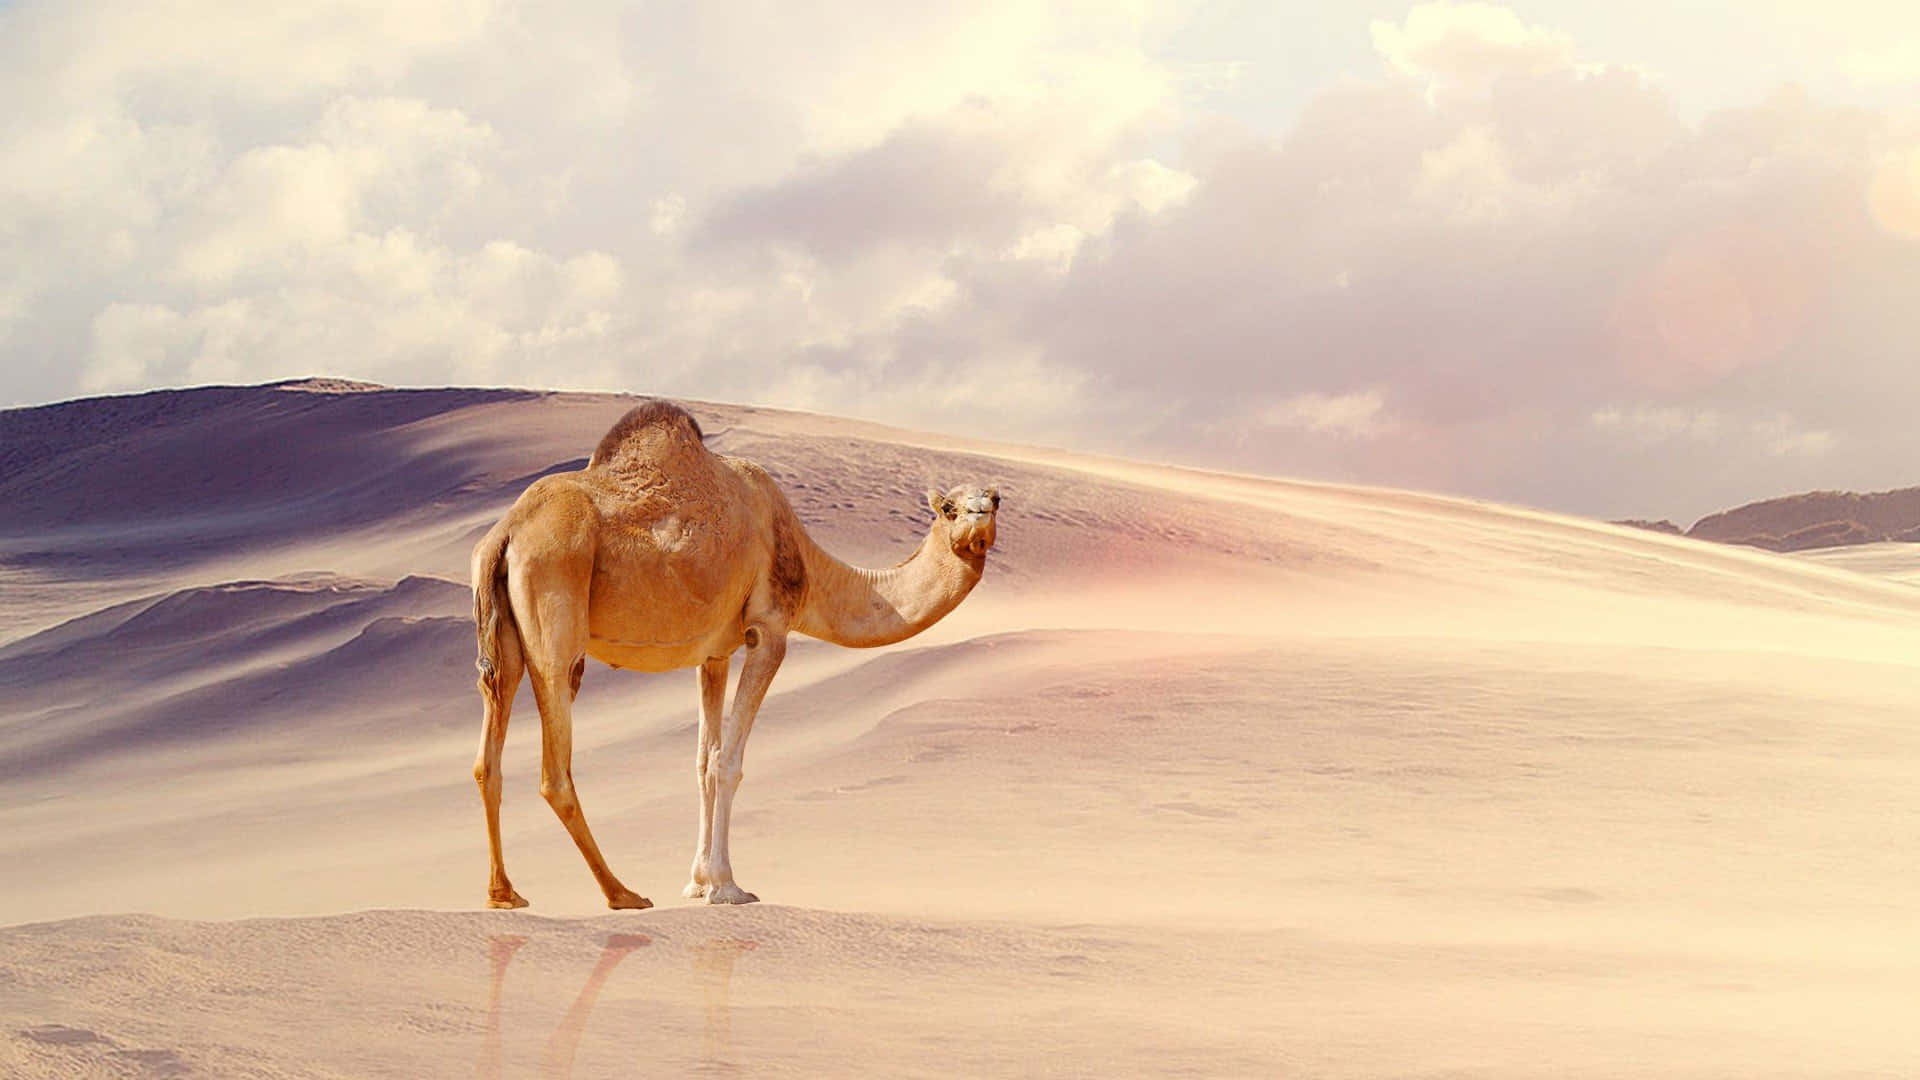 Einbraunes Kamel Spaziert Durch Eine Sandige Wüstenlandschaft.